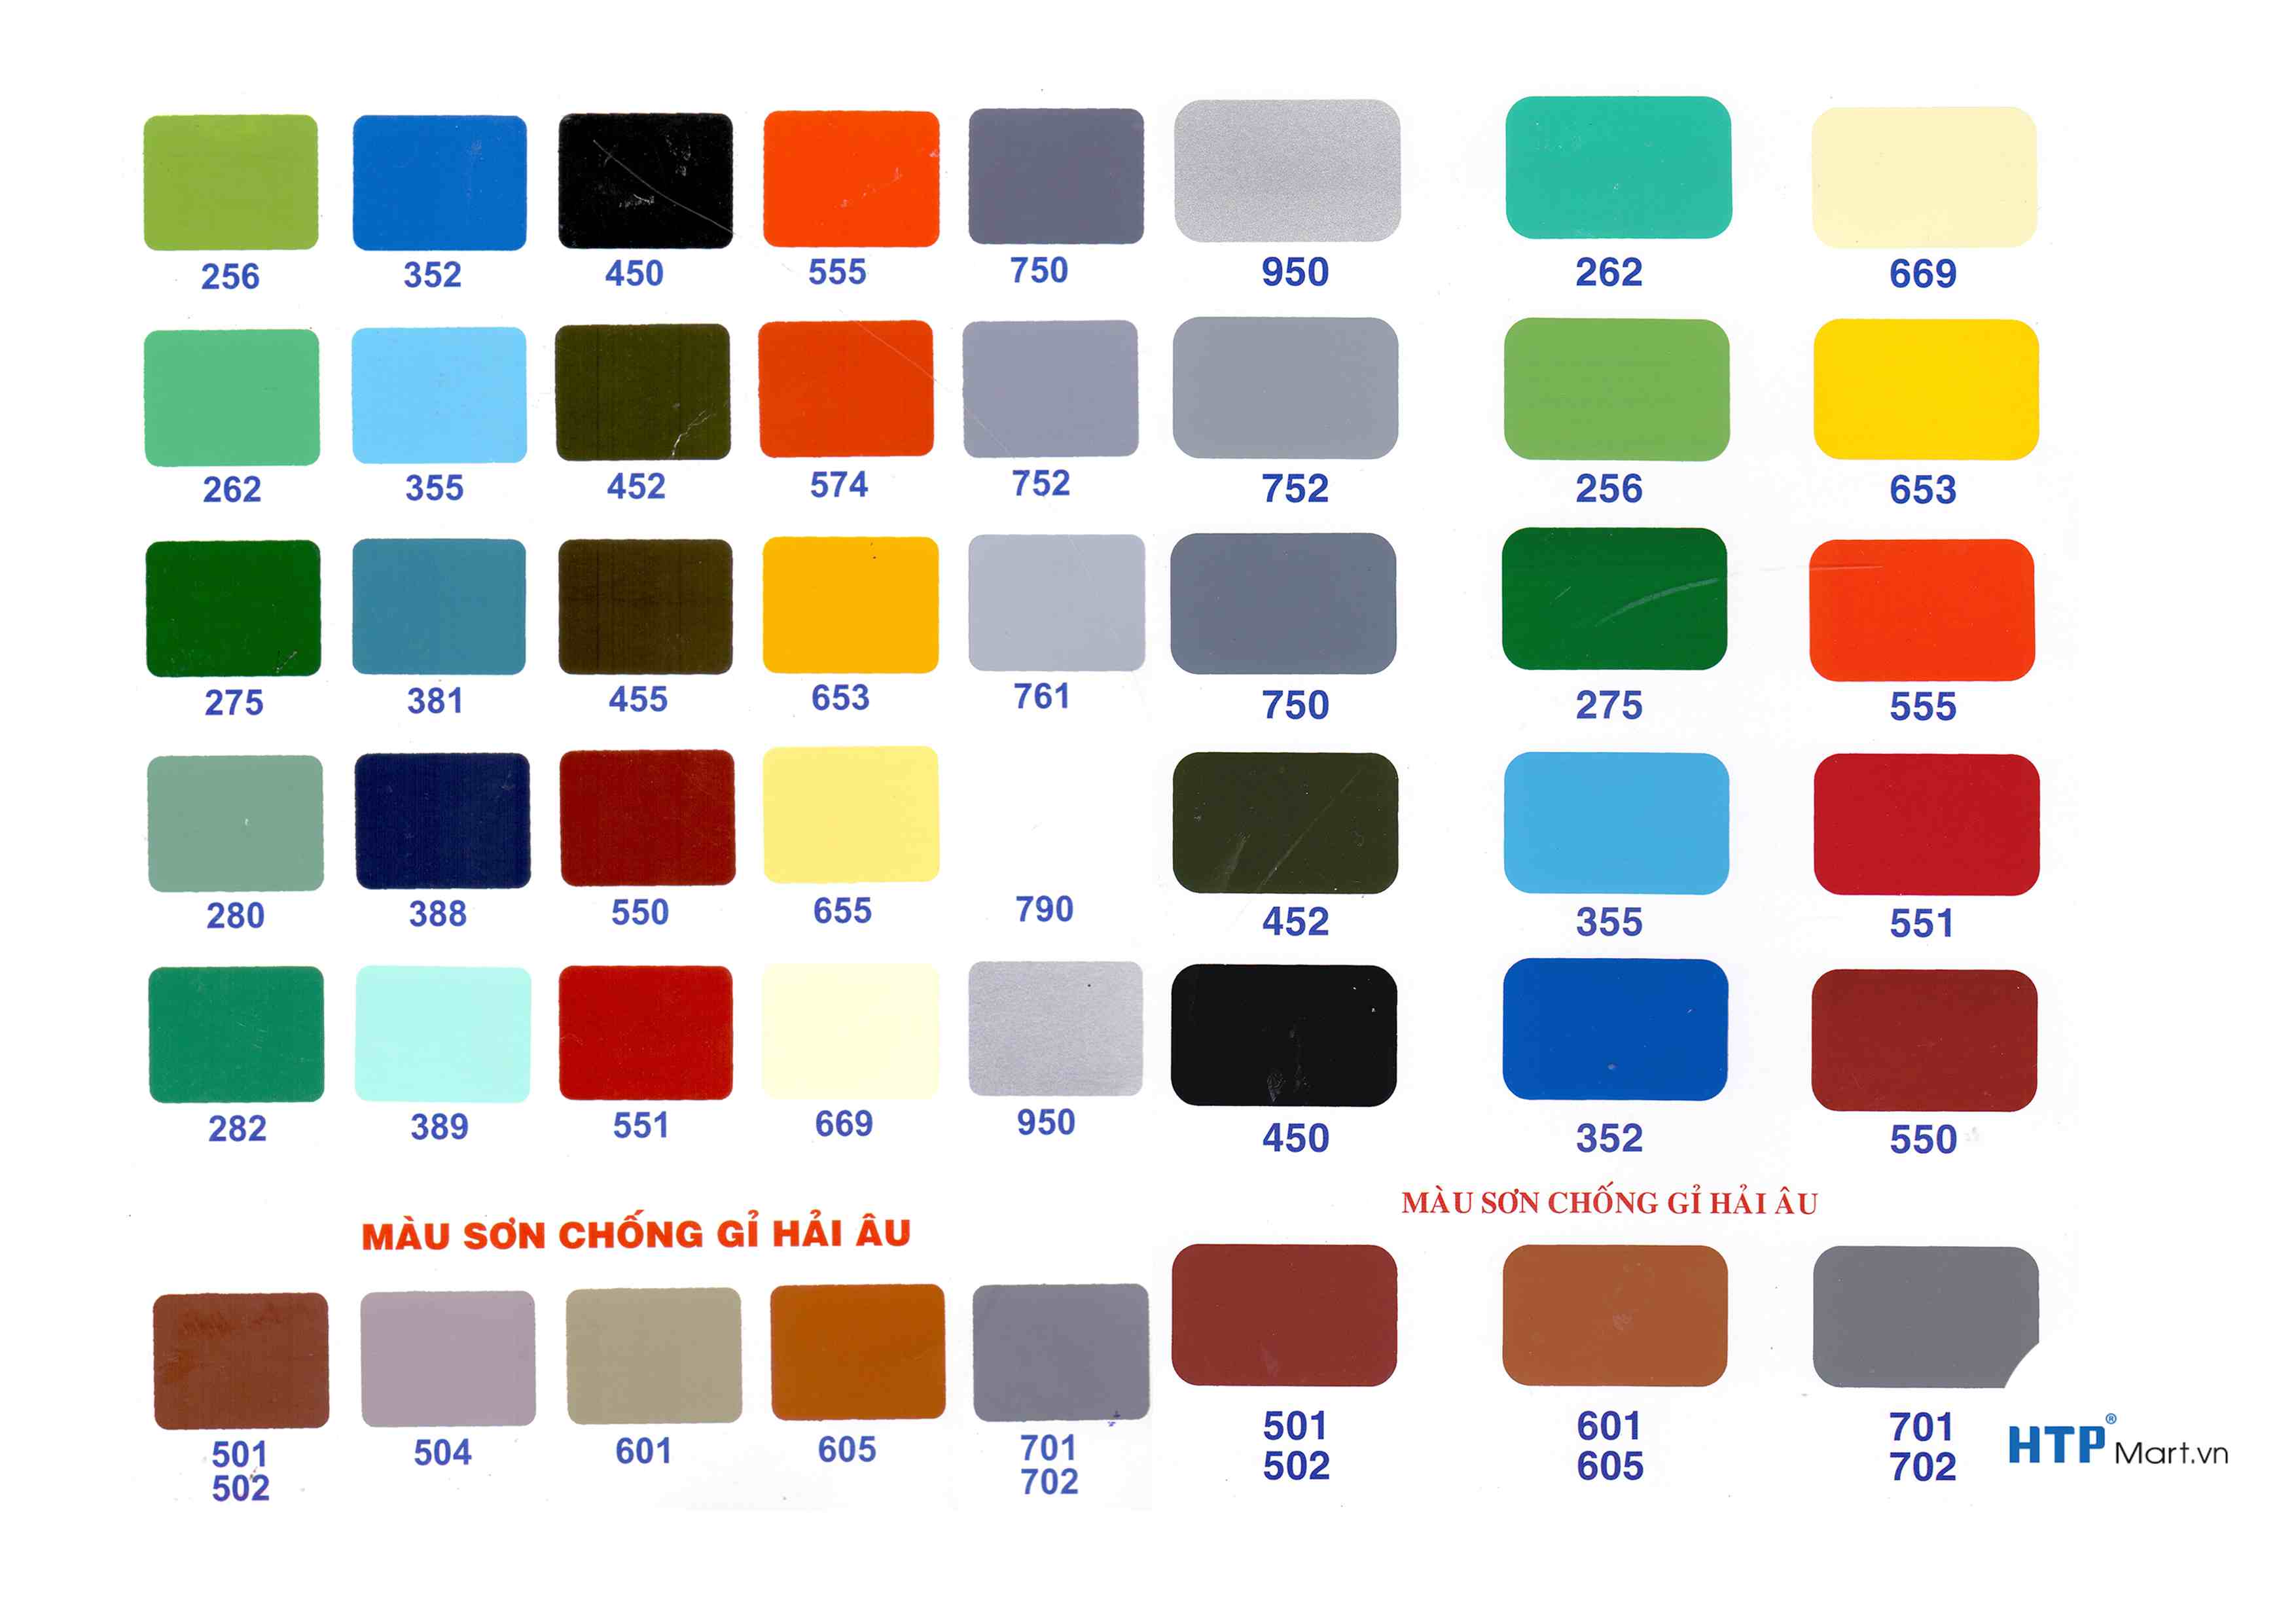 Bảng màu sơn Hải Âu 2 là sản phẩm chuyên dùng để sơn trang trí trong nhà và ngoài trời, đem lại màu sắc đa dạng cho ngôi nhà của bạn.